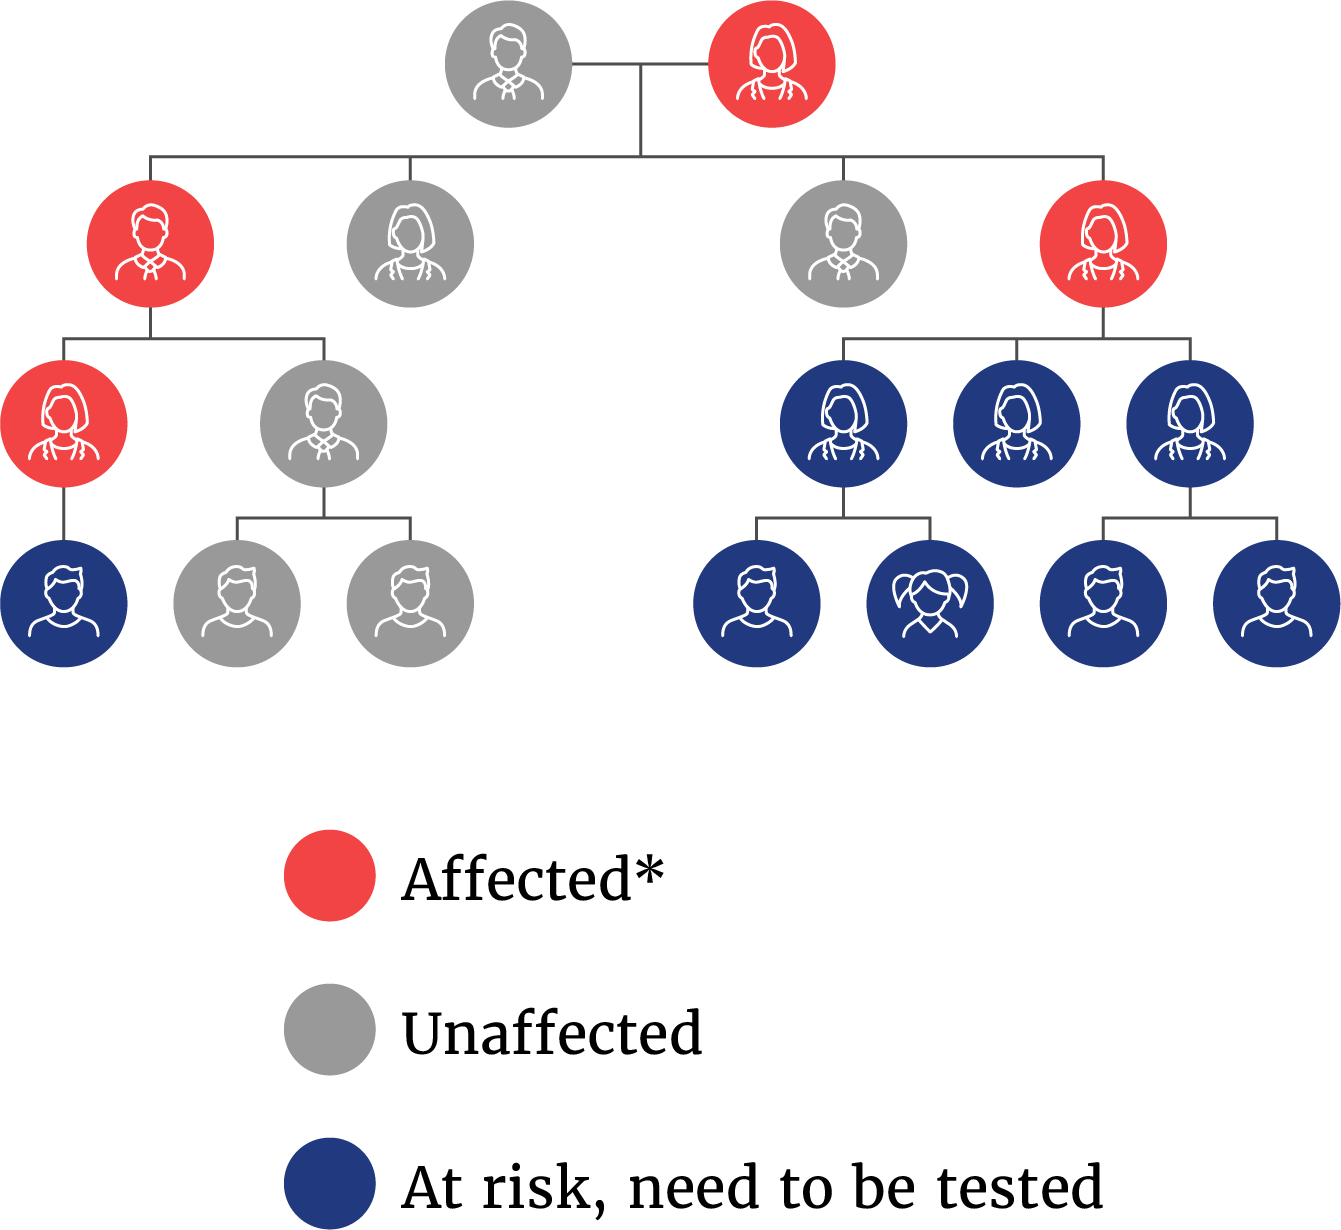 Family tree showing genetic inheritance pattern of Fabry disease